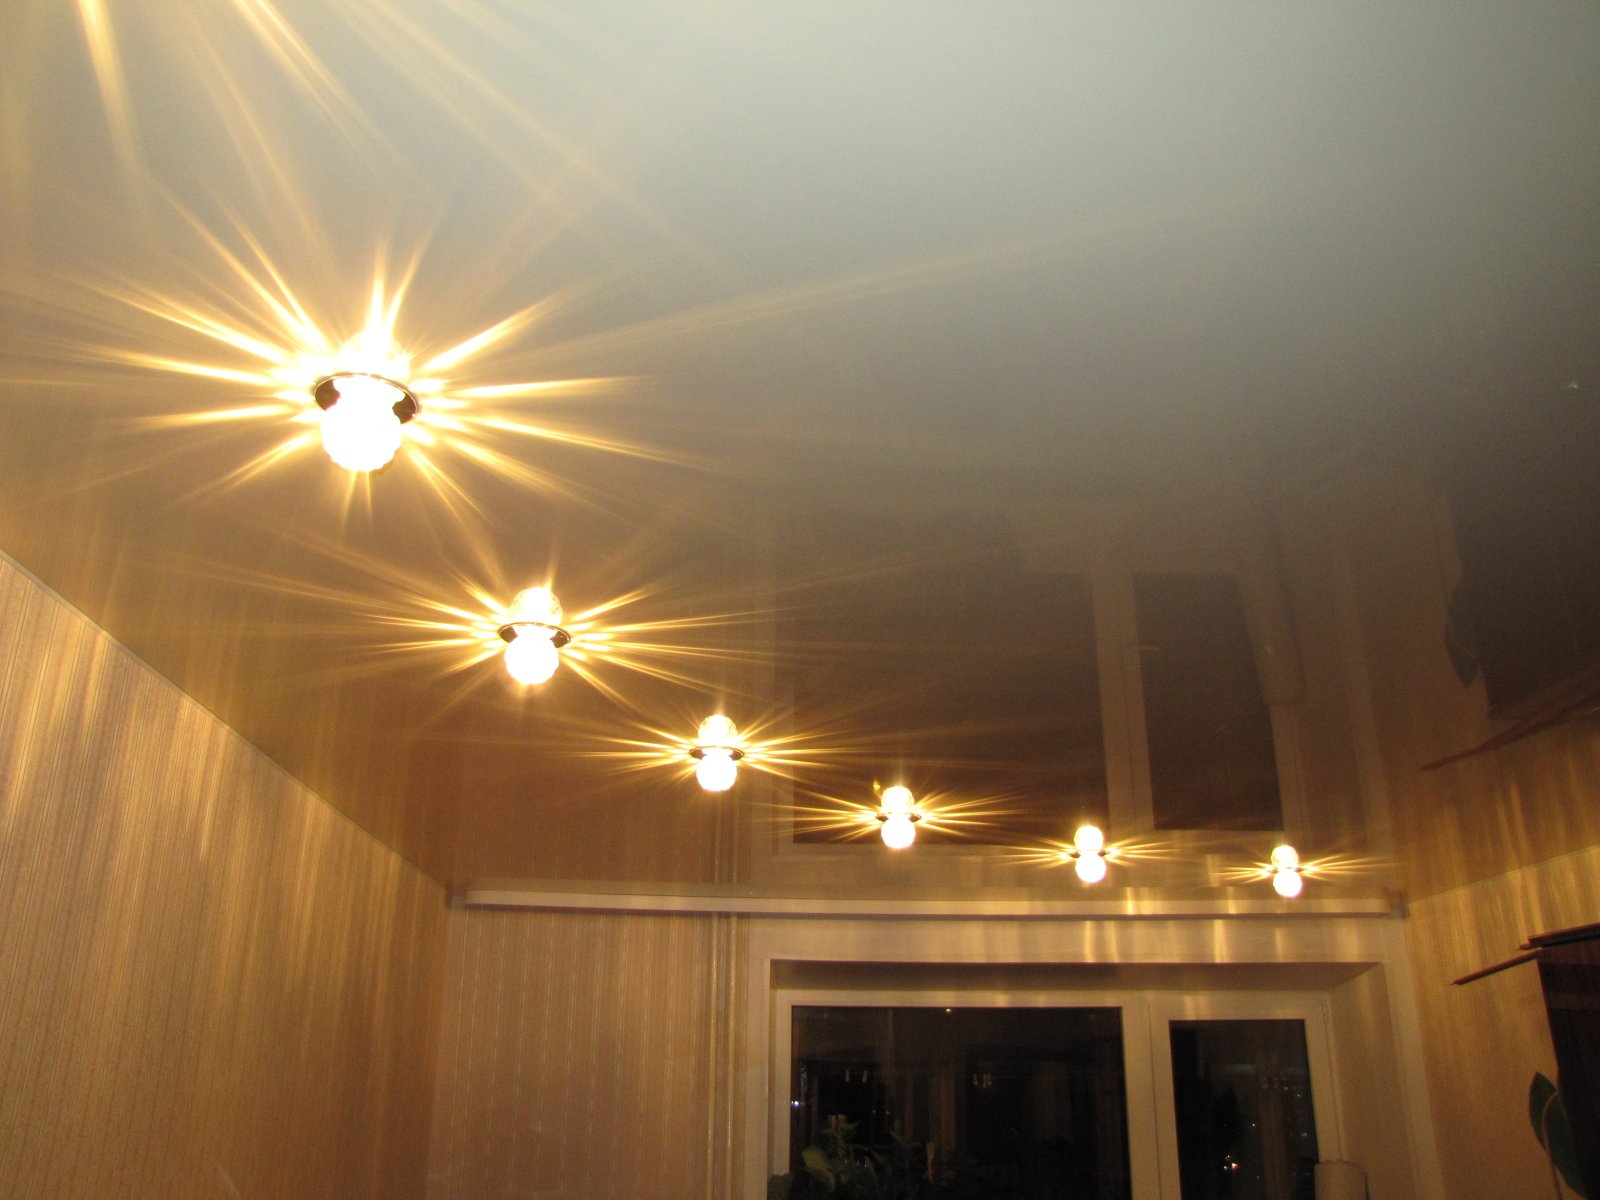 Расположение лампочек в натяжном потолке в зале без люстры